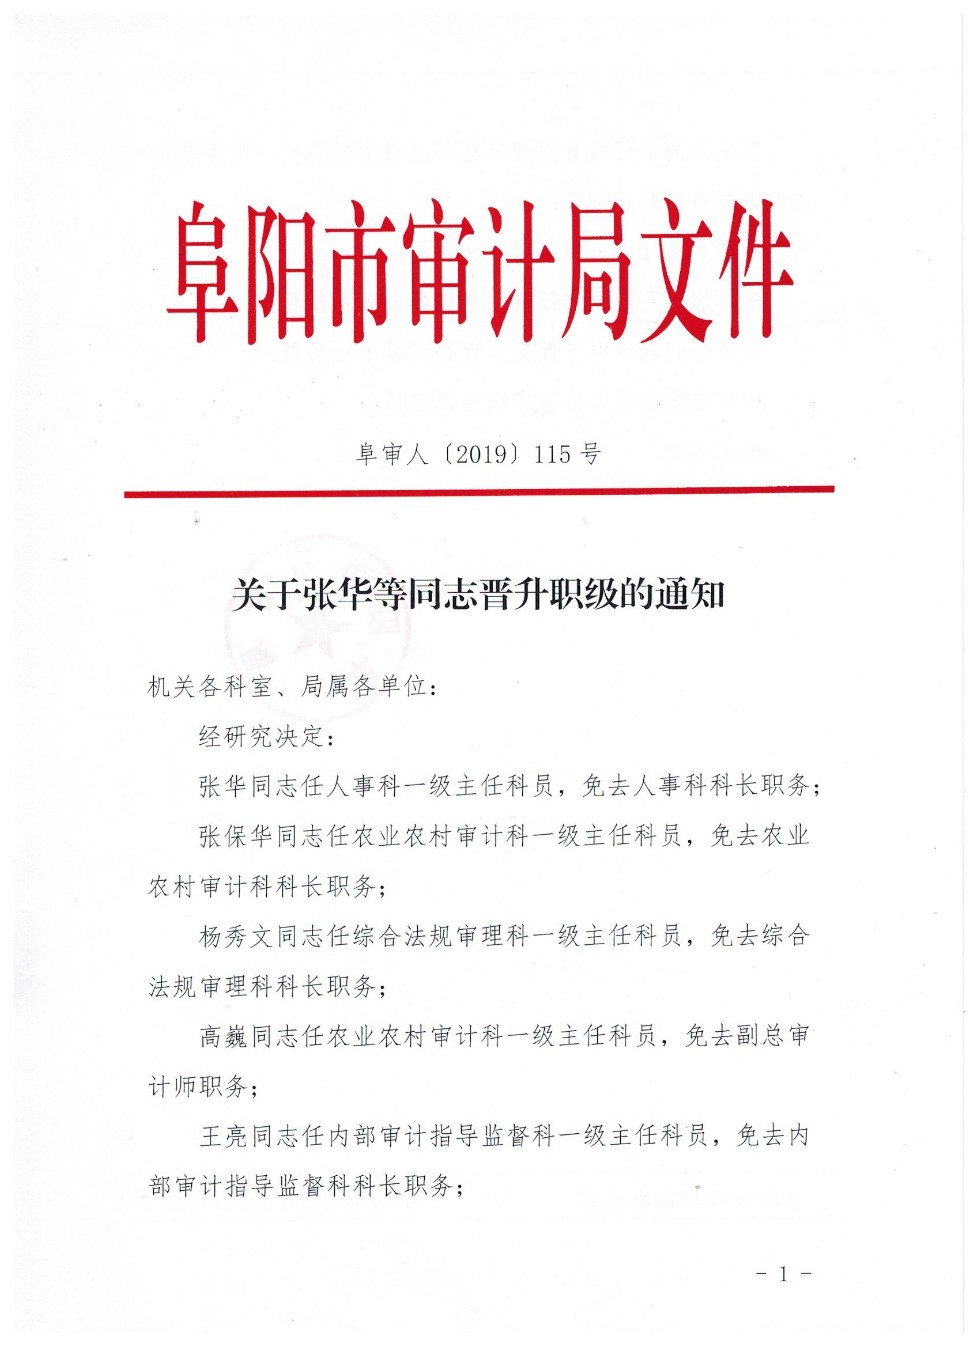 关于张华等同志晋升职级的通知